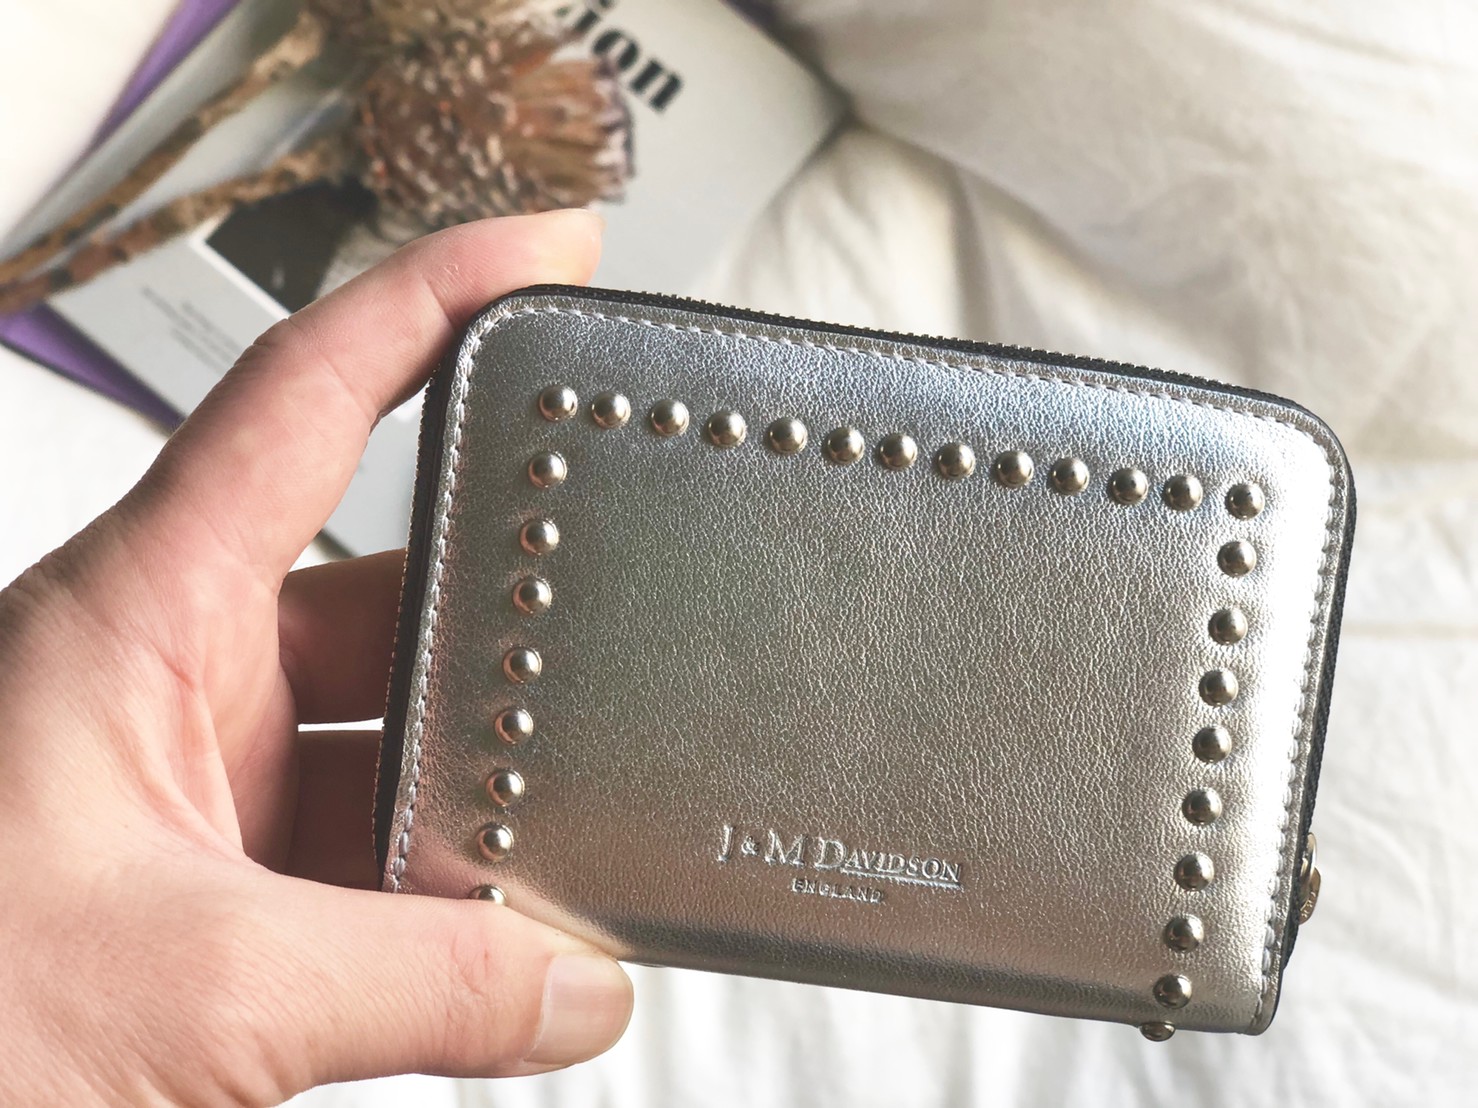 j &m davidson 財布